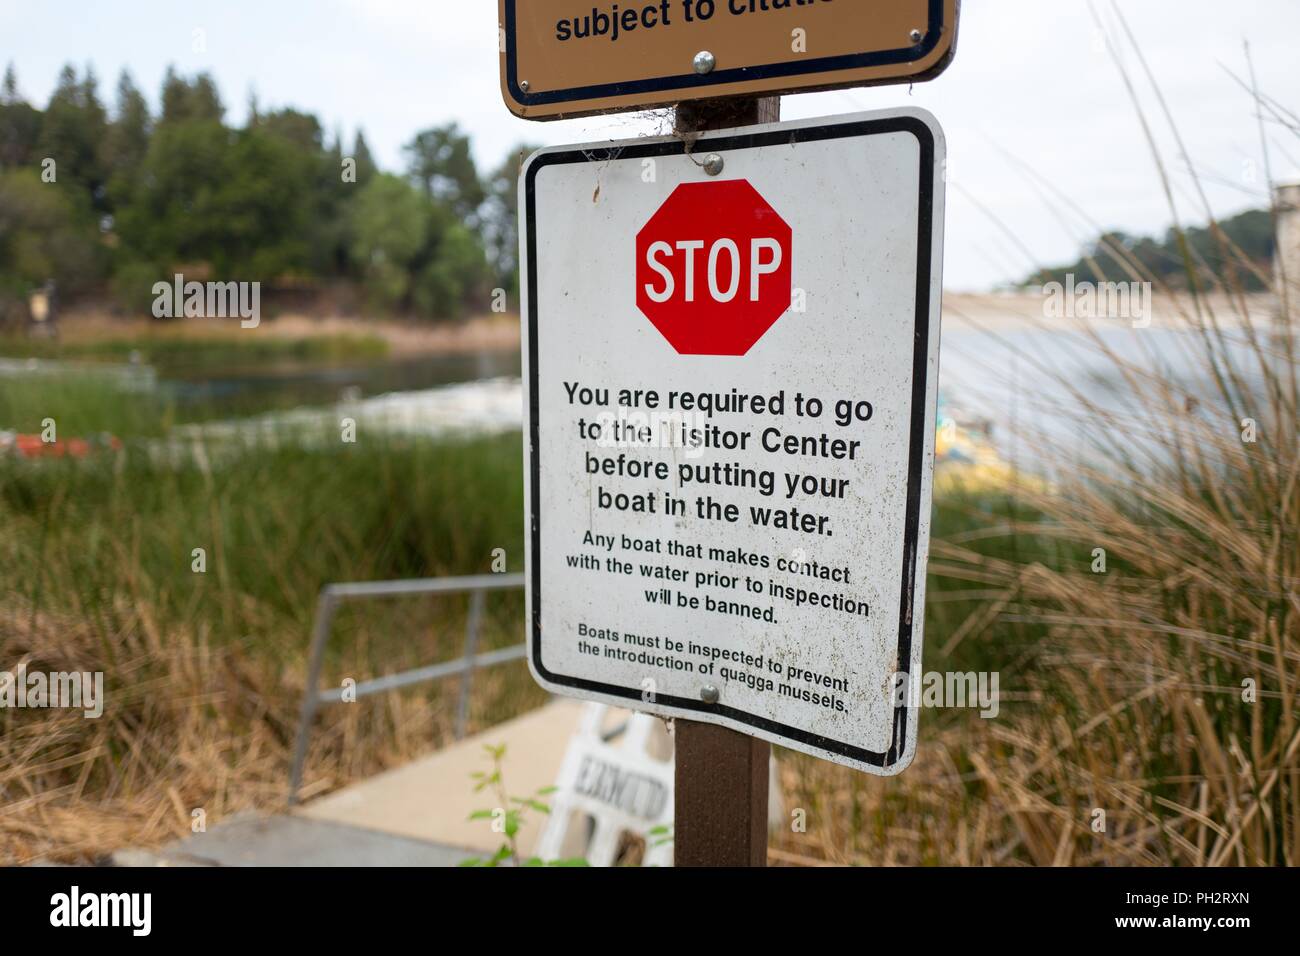 Zeichen Lafayette am Stausee in Lafayette, Kalifornien Warnungen Kreissägen für die Anwesenheit von quagga Miesmuscheln zu prüfen, eine invasive Arten bedroht, Kalifornien Wasserstraßen, 21. August 2018. () Stockfoto